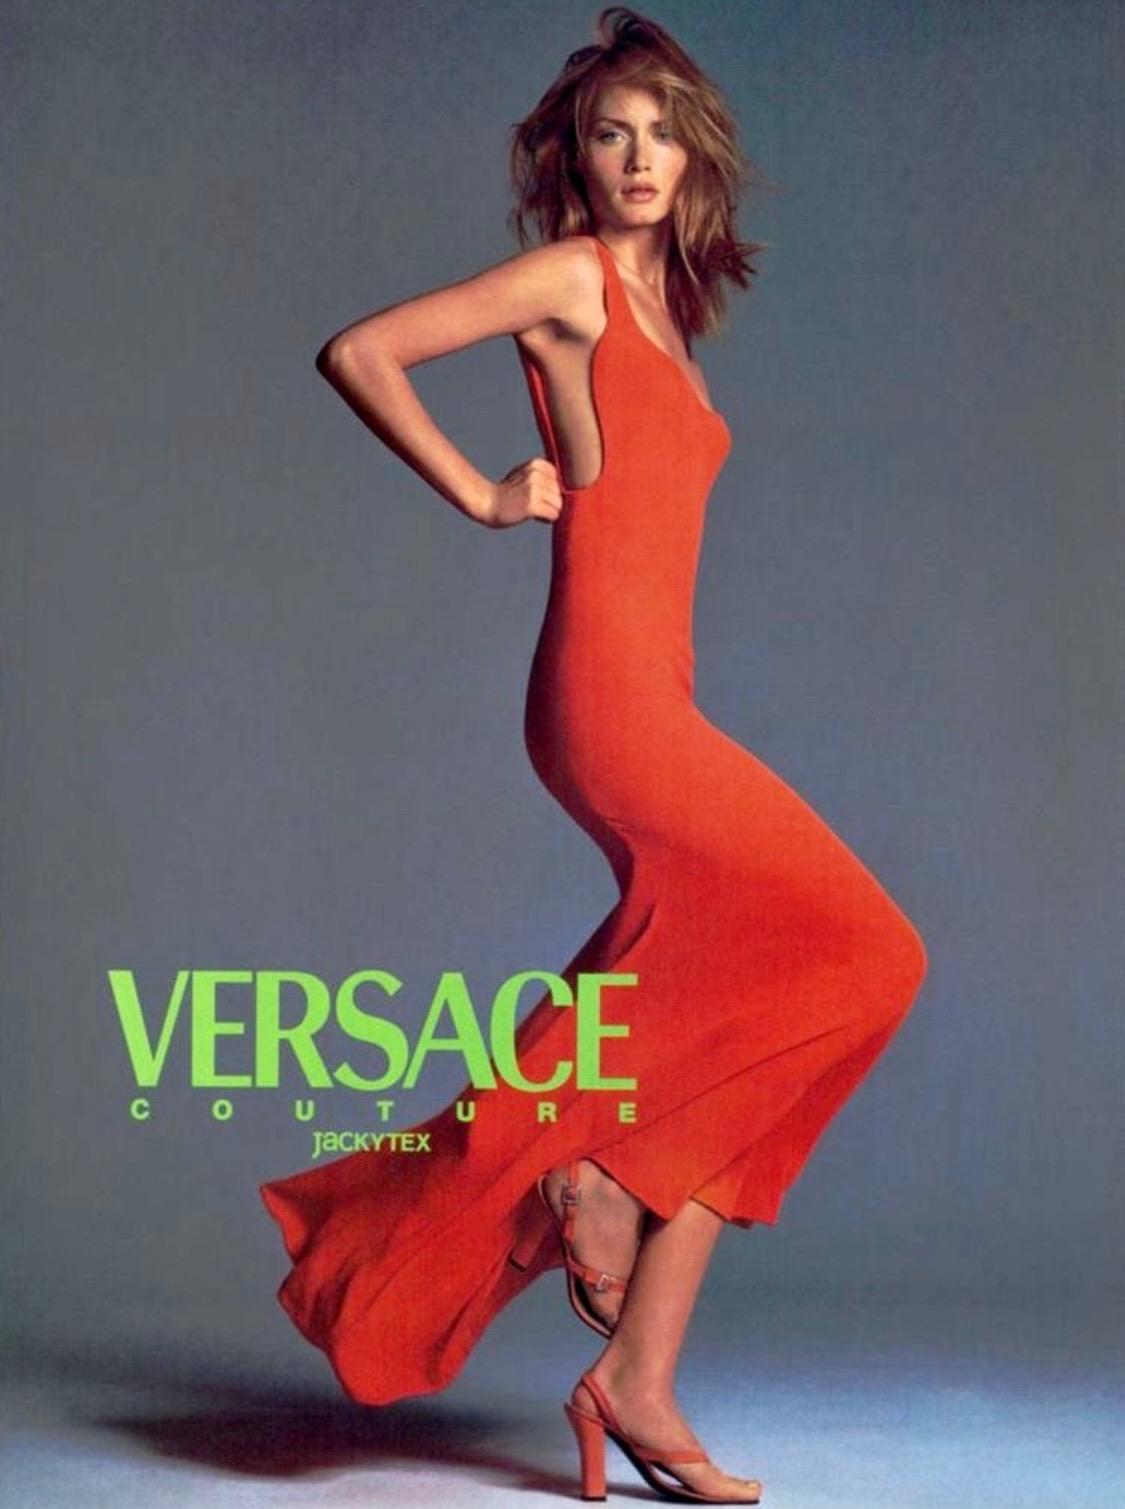 Collectional présente une élégante robe de soirée orange vif conçue par Gianni Versace pour sa collection printemps/été 1996. Cette pièce a été portée par Helena Christensen dans le look numéro 64 du défilé, par Amber Valletta dans la campagne